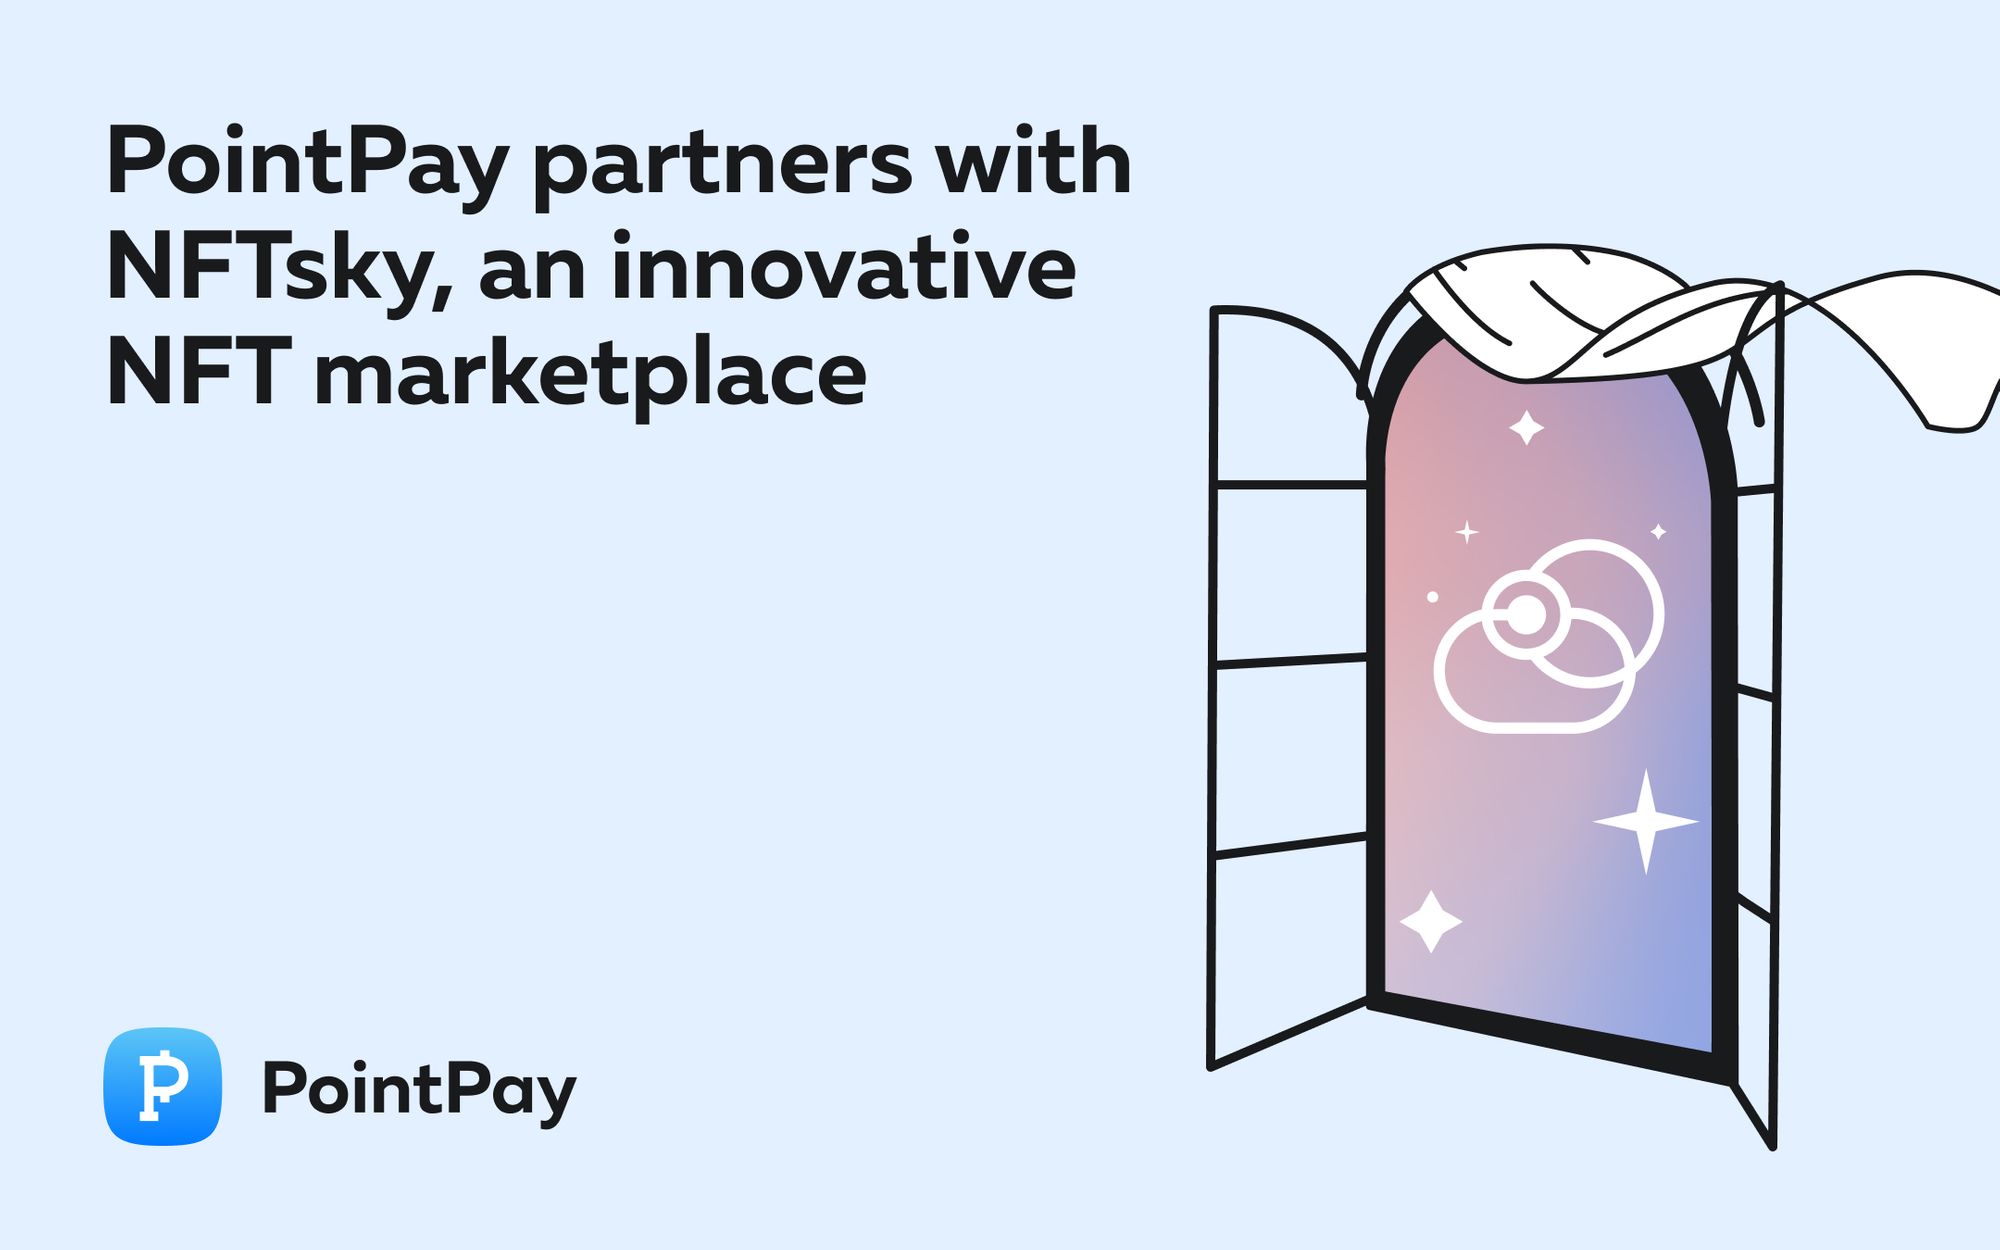 PointPay partners with NFTsky, an innovative NFT marketplace